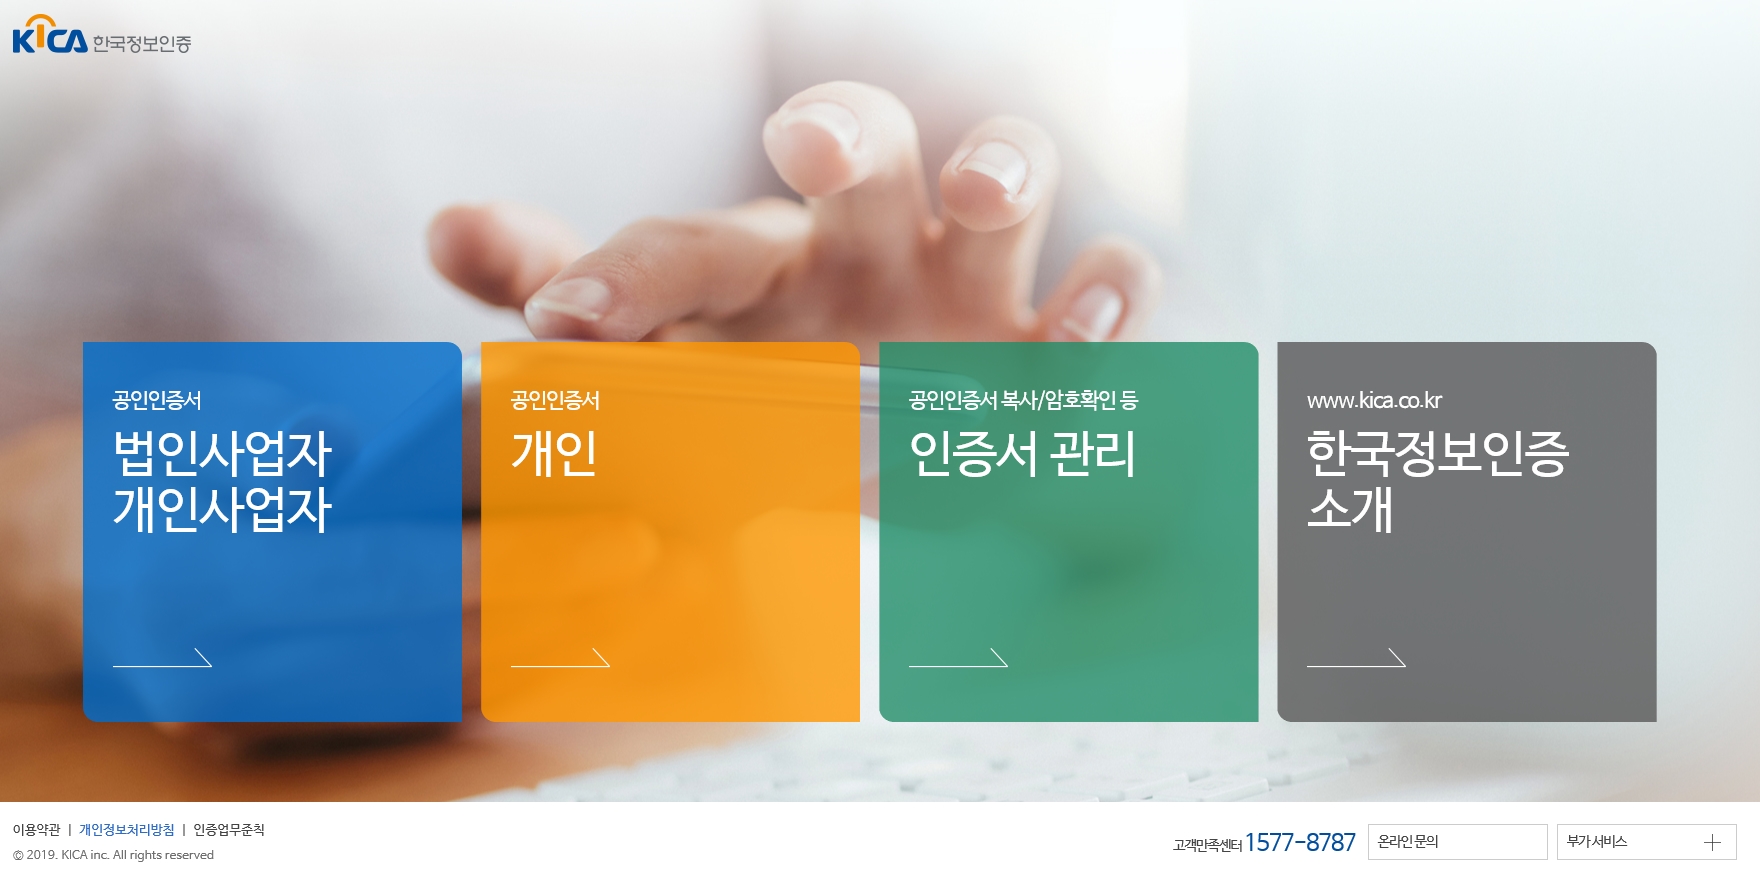 한국정보인증 Signgate 서비스 스크릿샷